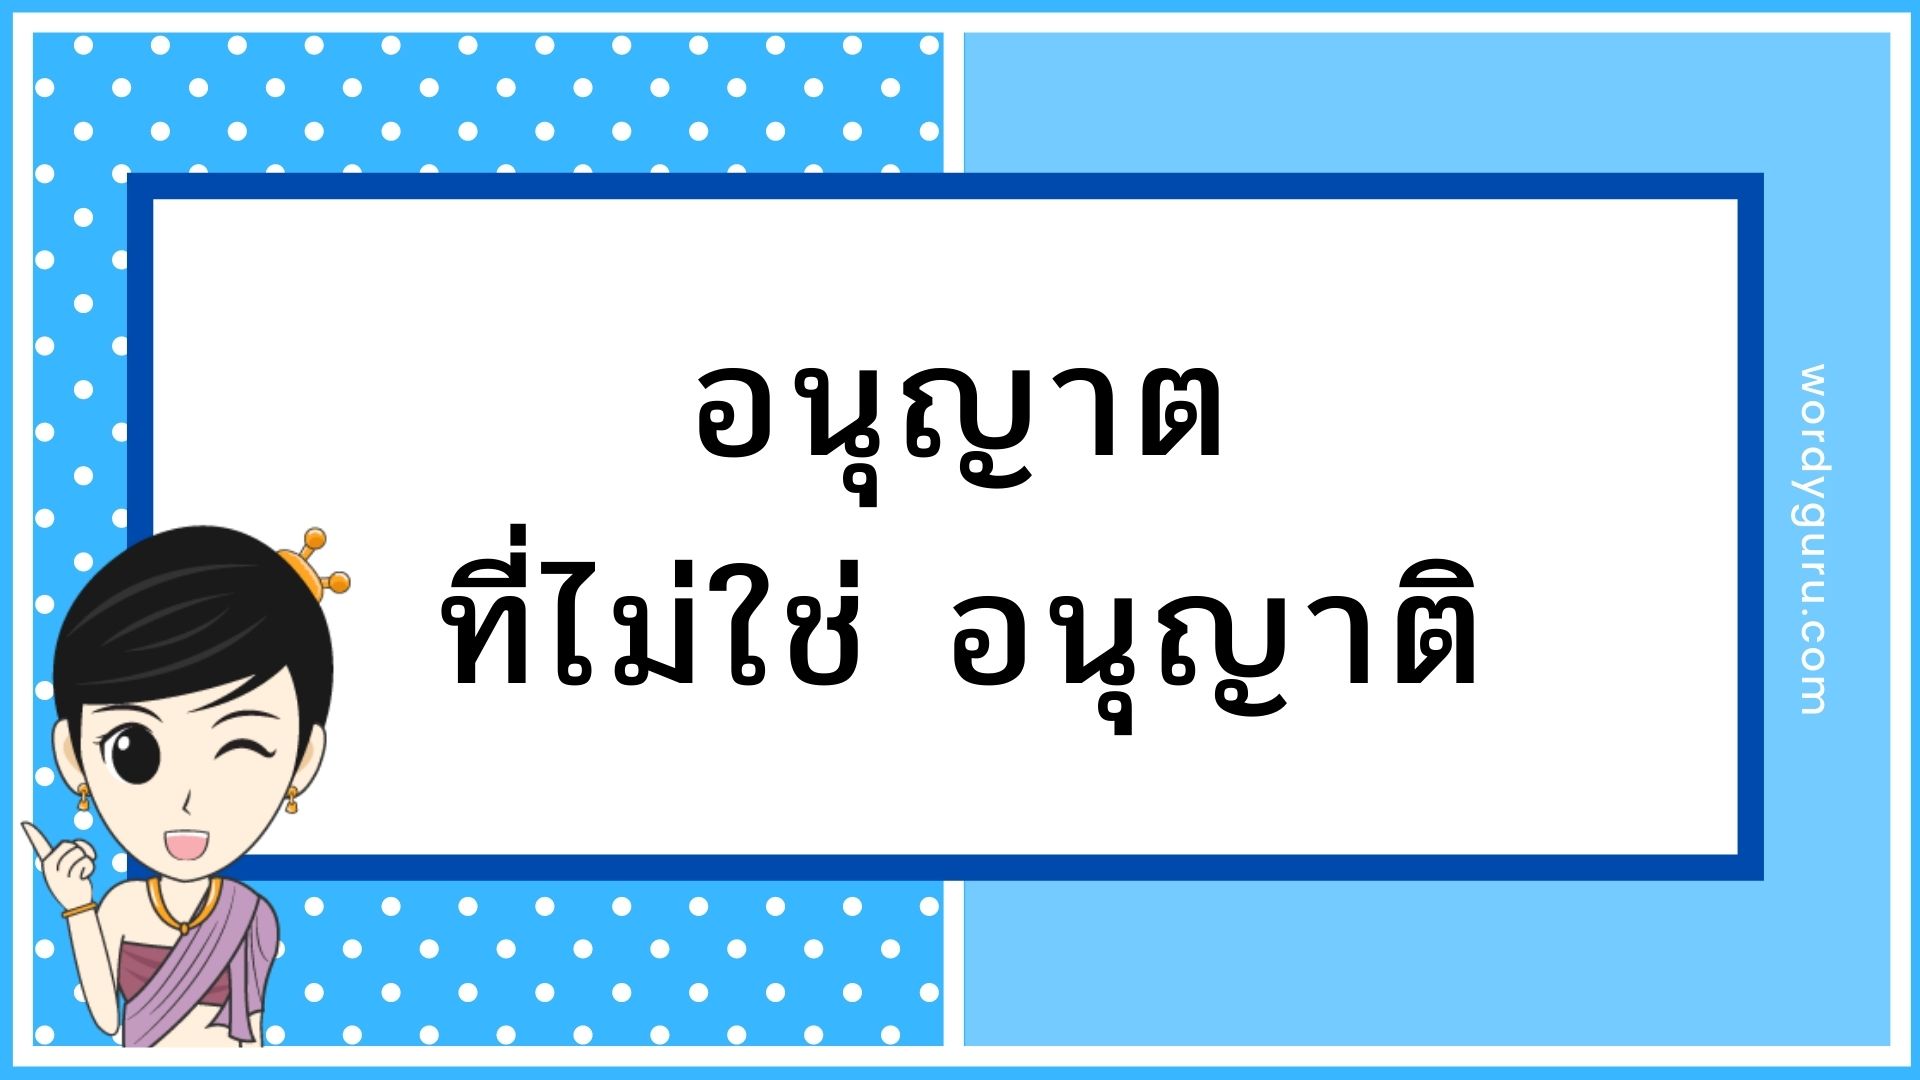 คำในภาษาไทยอีกหนึ่งคำที่มักจะเขียนและสะกดผิดกันมาตลอด หากมีโพลสำรวจก็คงหนีไม่พ้นอันดับต้น ๆ นั่นคือคำว่า อนุญาต ที่เขียนผิดโดยการเติม สระอิ ไปบน ต.เต่า กลายเป็นคำว่า อนุญาติ ทั้งเด็กและผู้ใหญ่เองก็พลาดกันบ่อยครั้งกับคำนี้